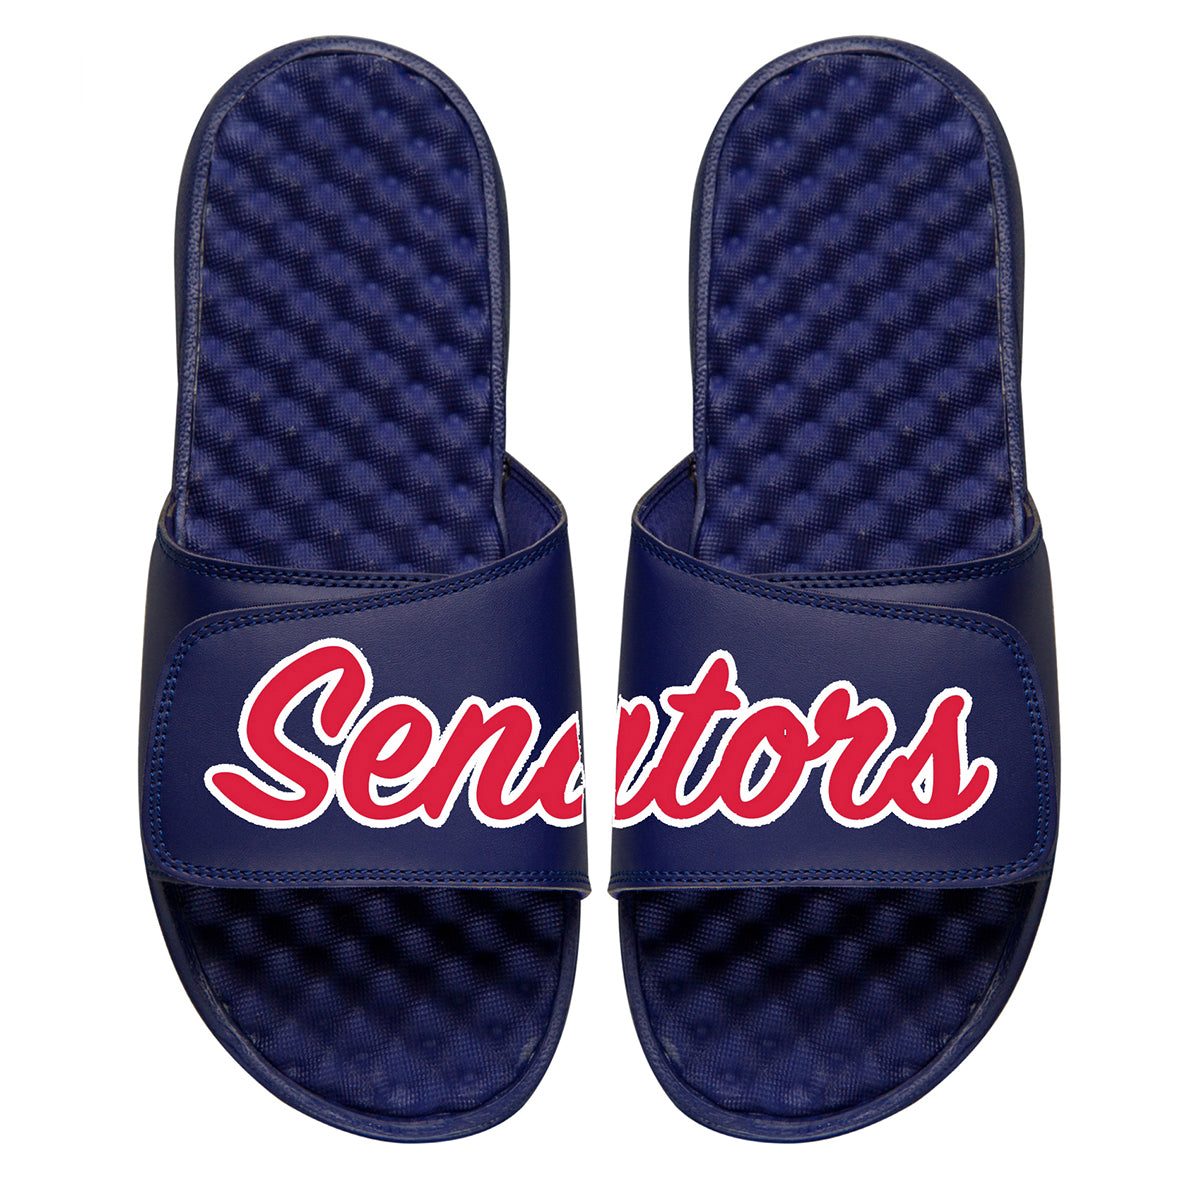 Senators Baseball Slides